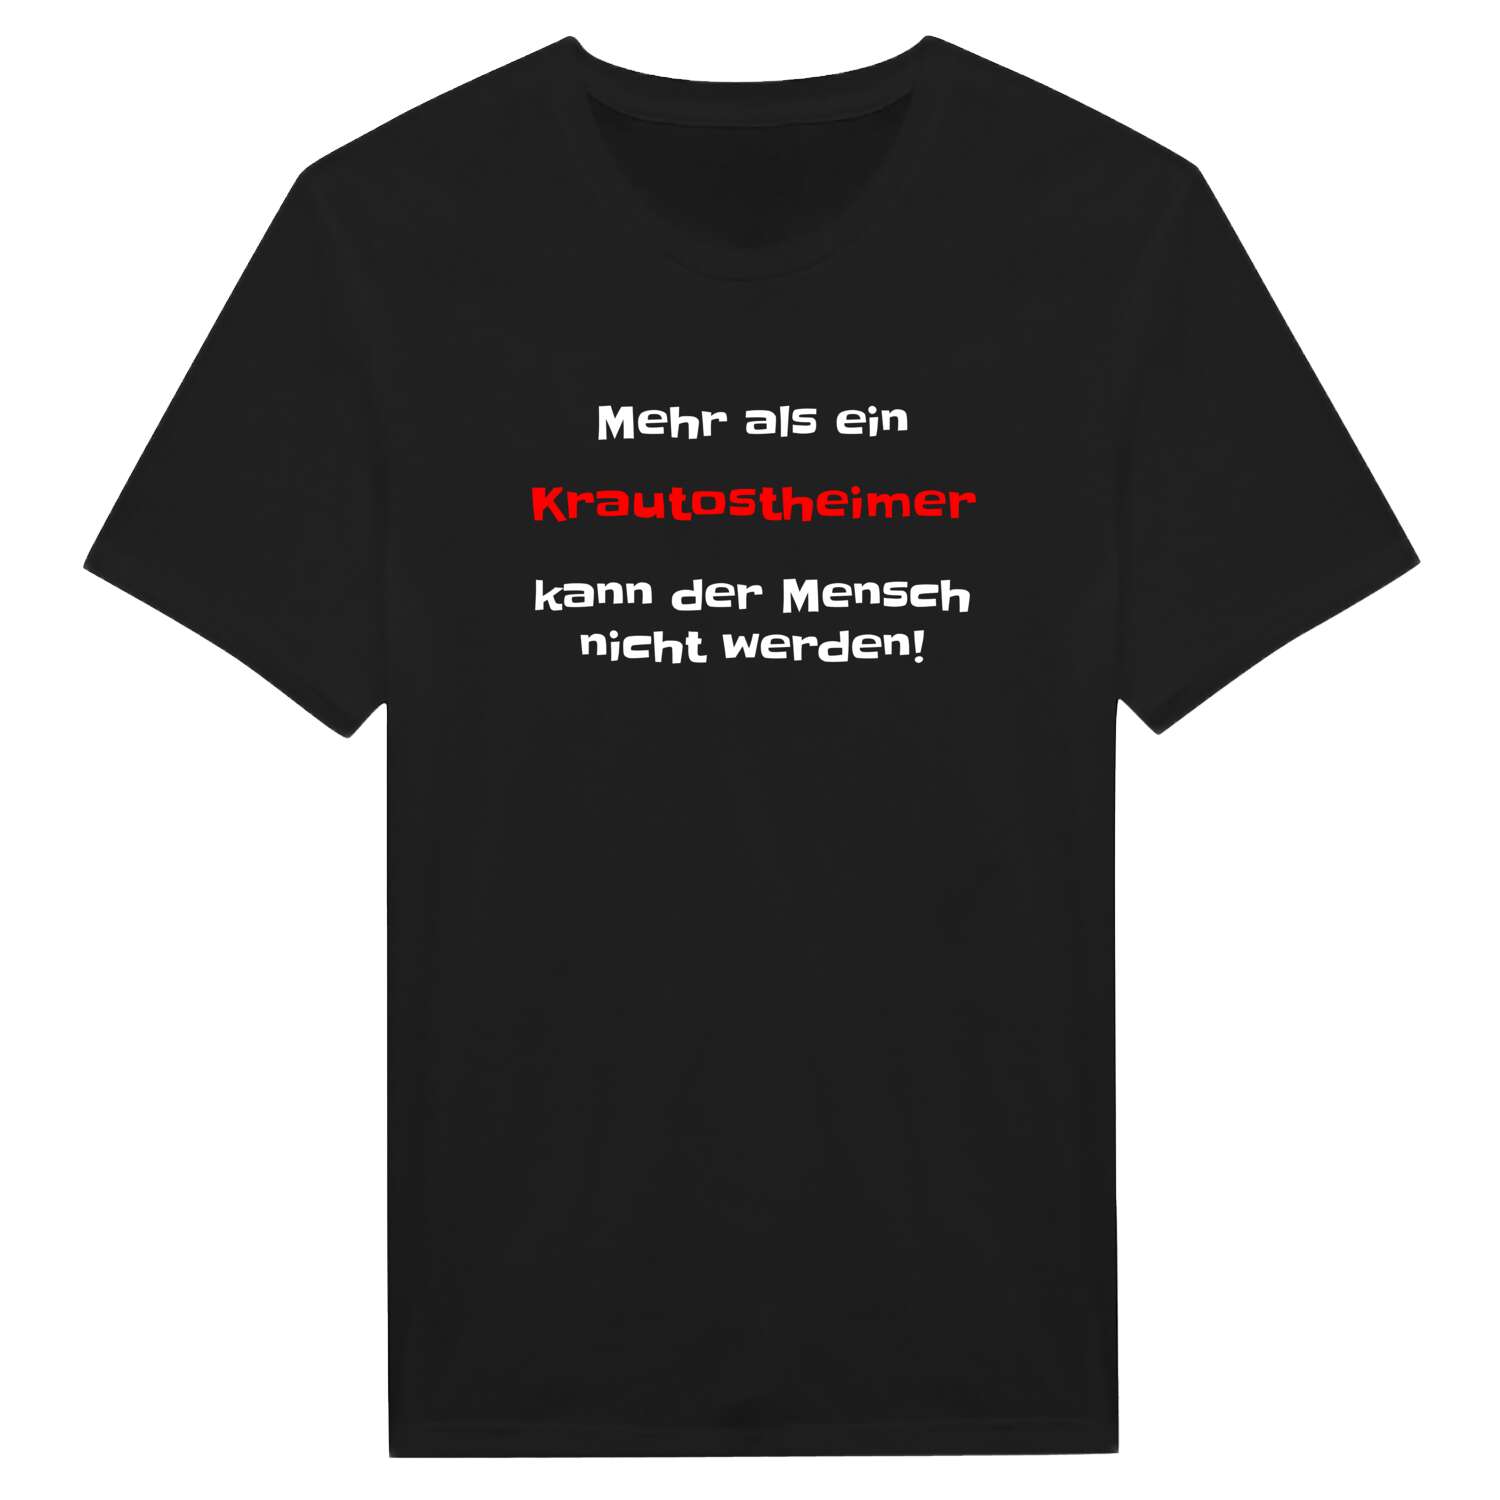 Krautostheim T-Shirt »Mehr als ein«